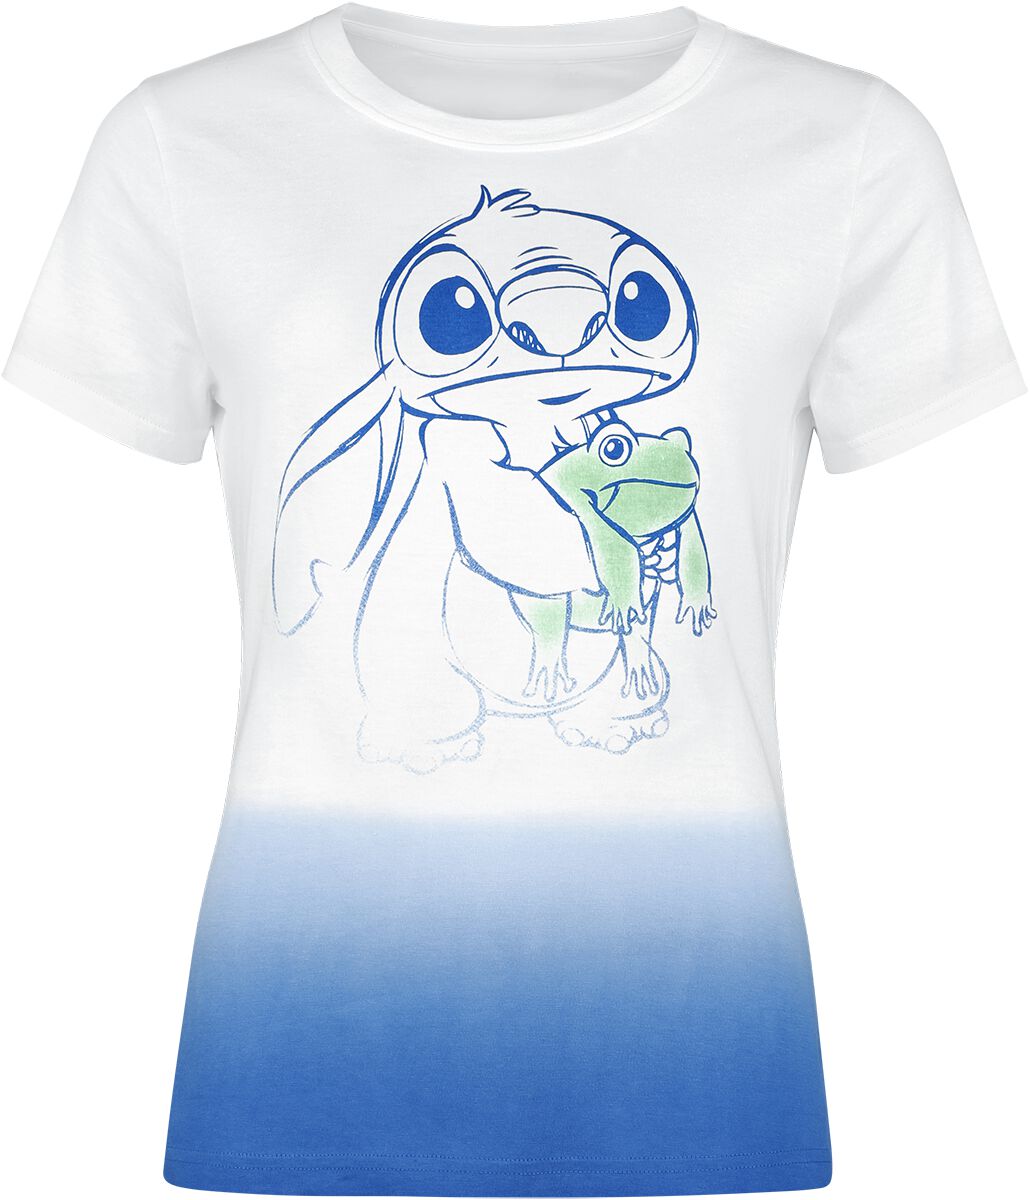 Lilo & Stitch Frog Friend T-Shirt multicolor in M